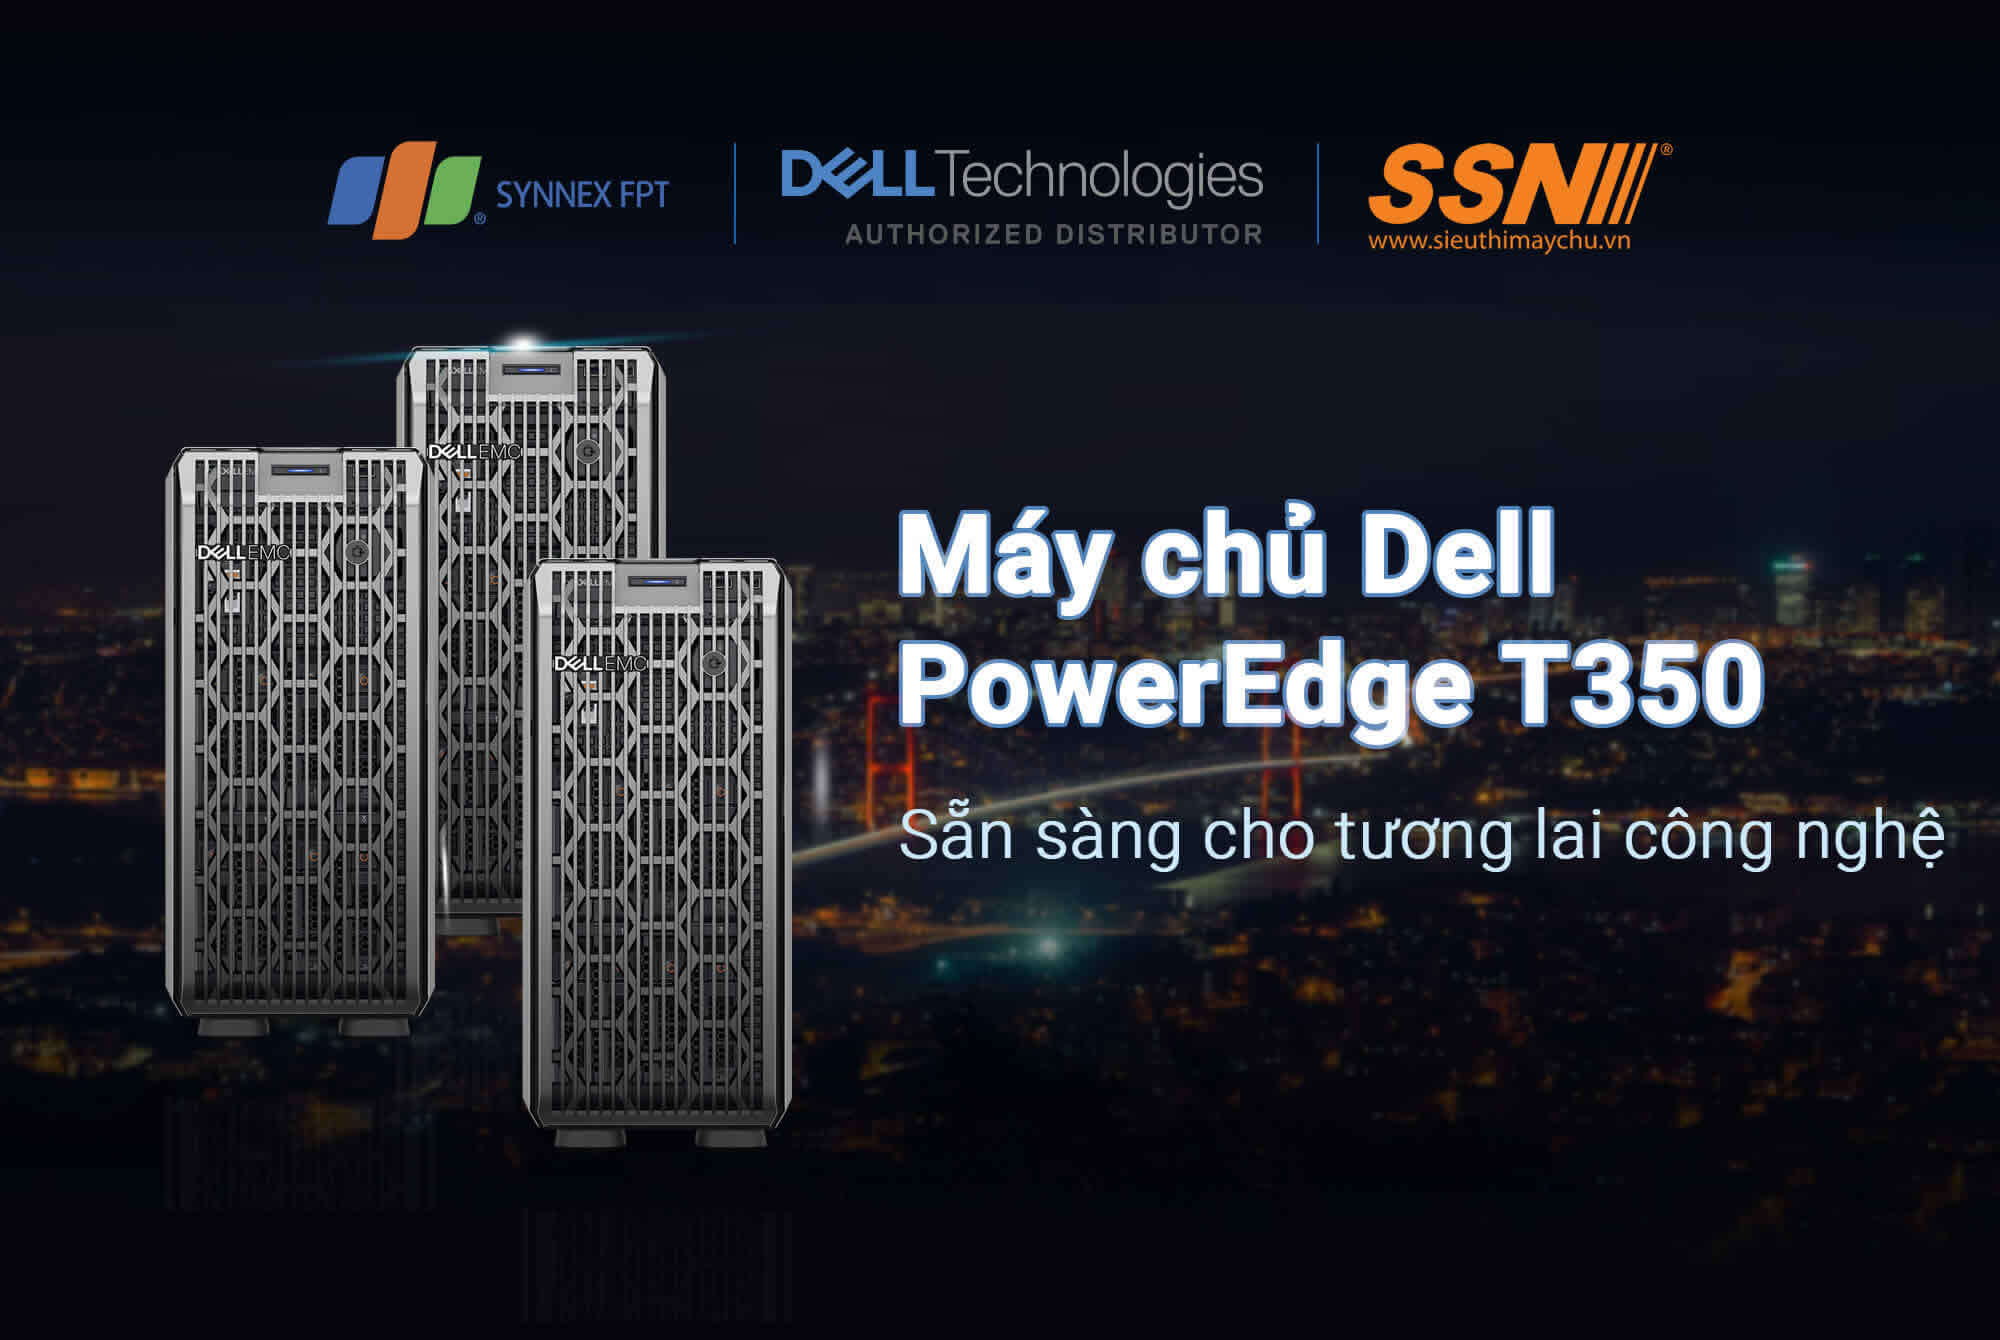 Máy chủ Dell PowerEdge T350 sẵn sàng cho tương lai công nghệ